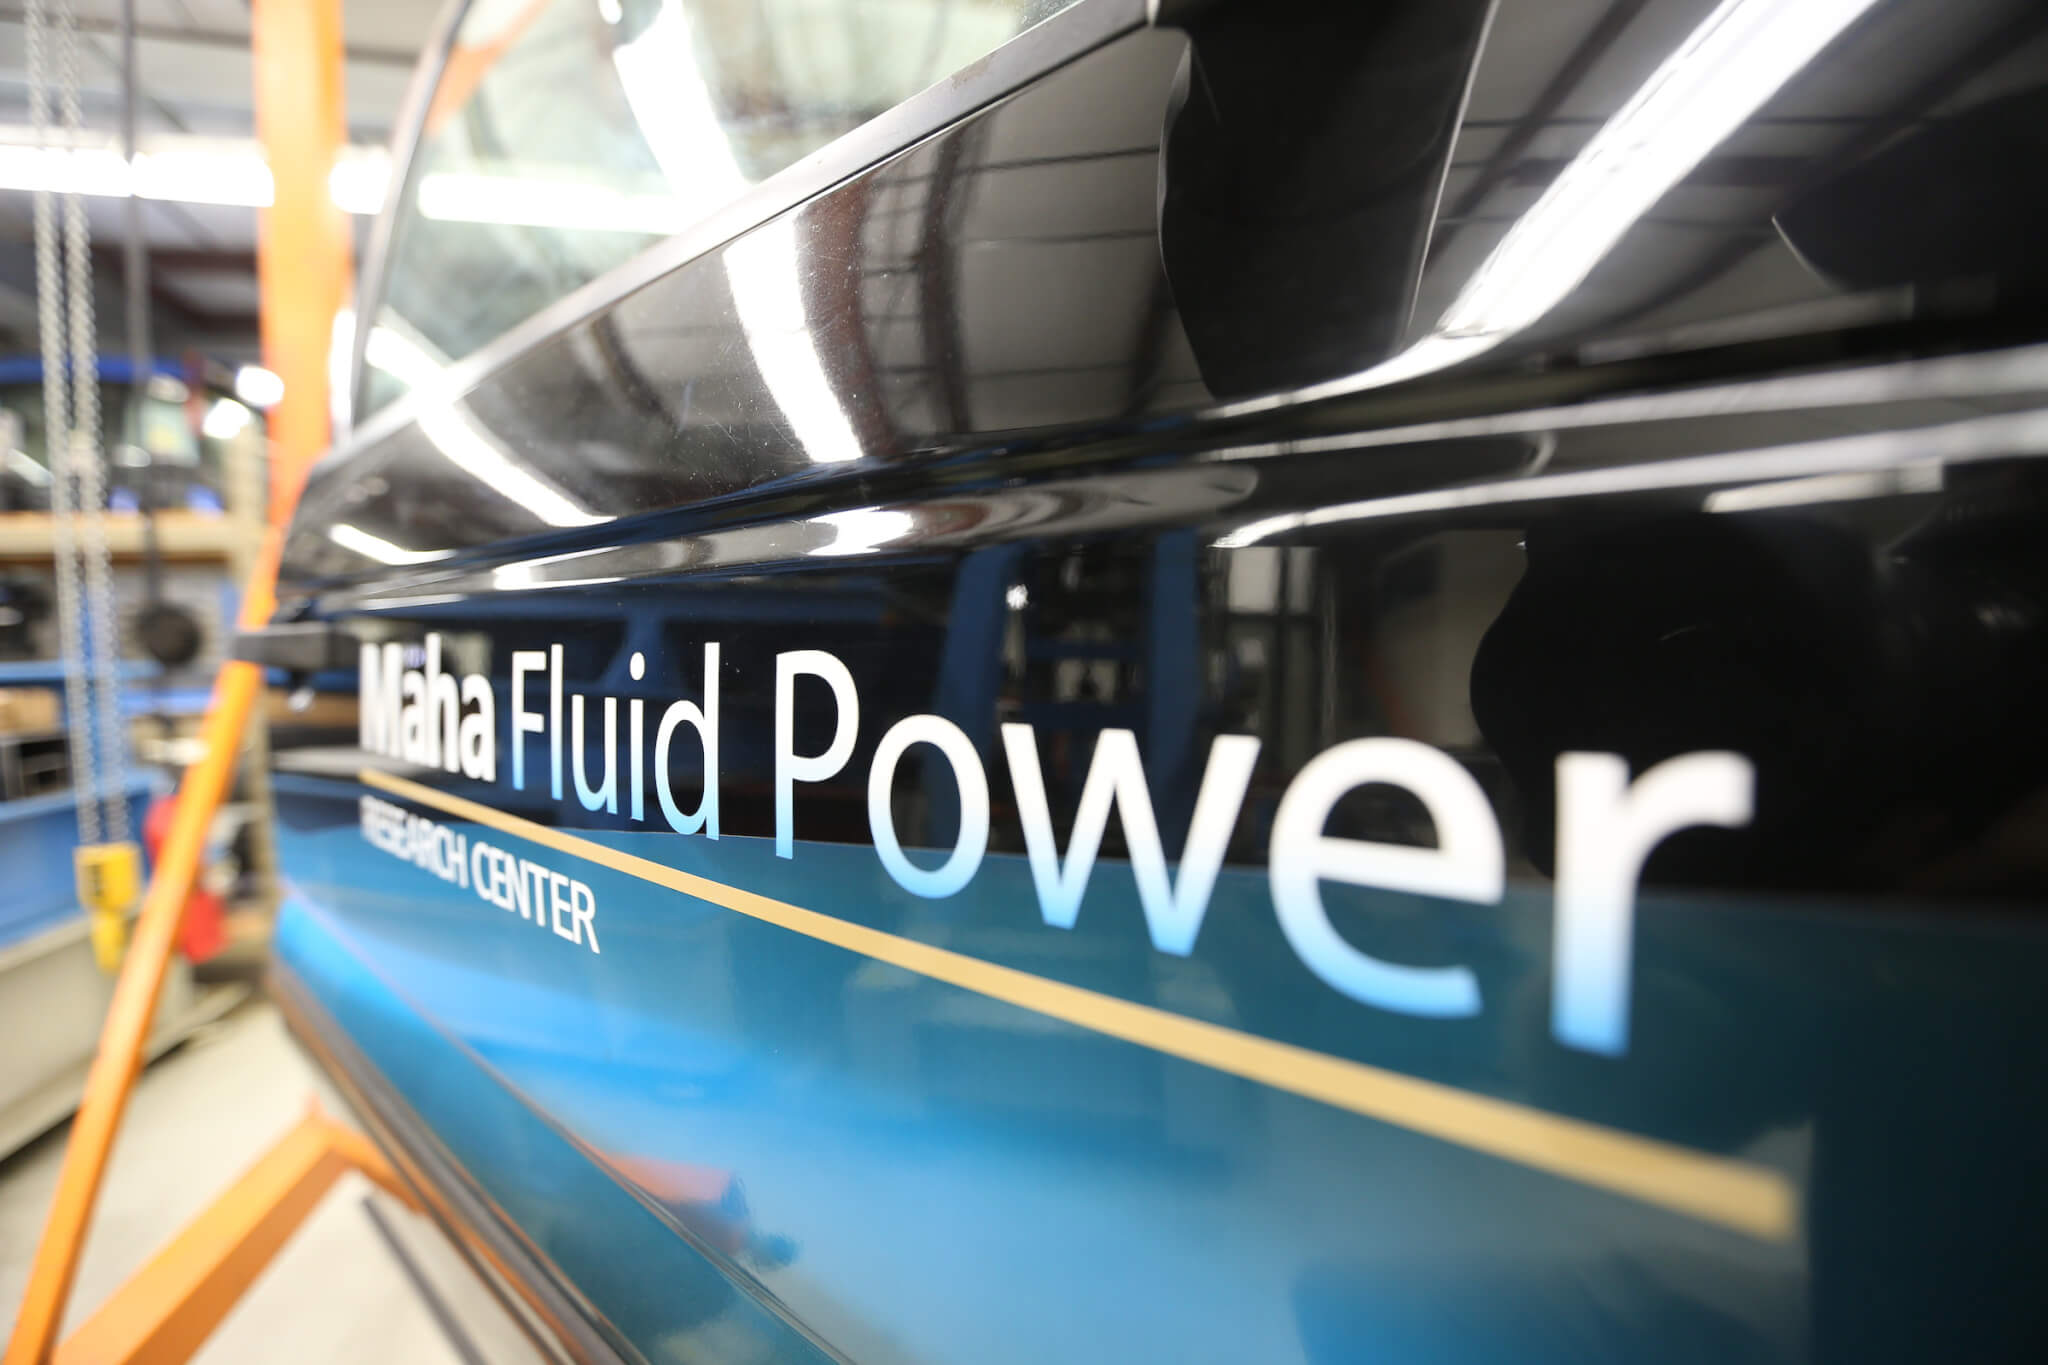 Maha Fluid Power Sign